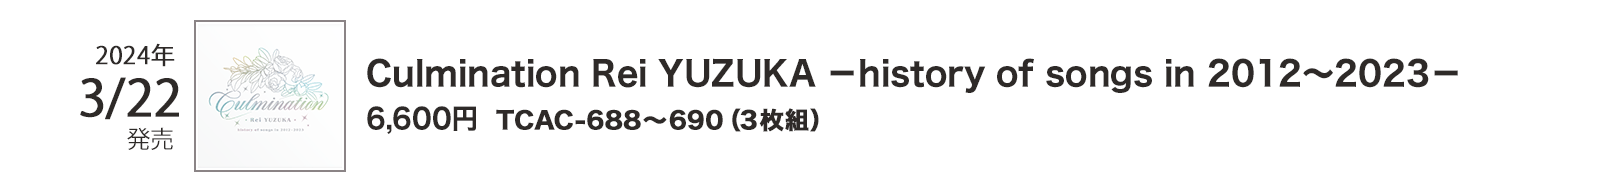 2024N322/TCAC-688`690i3gj/Culmination Rei YUZUKA |history of songs in 2012`2023|/6,600~